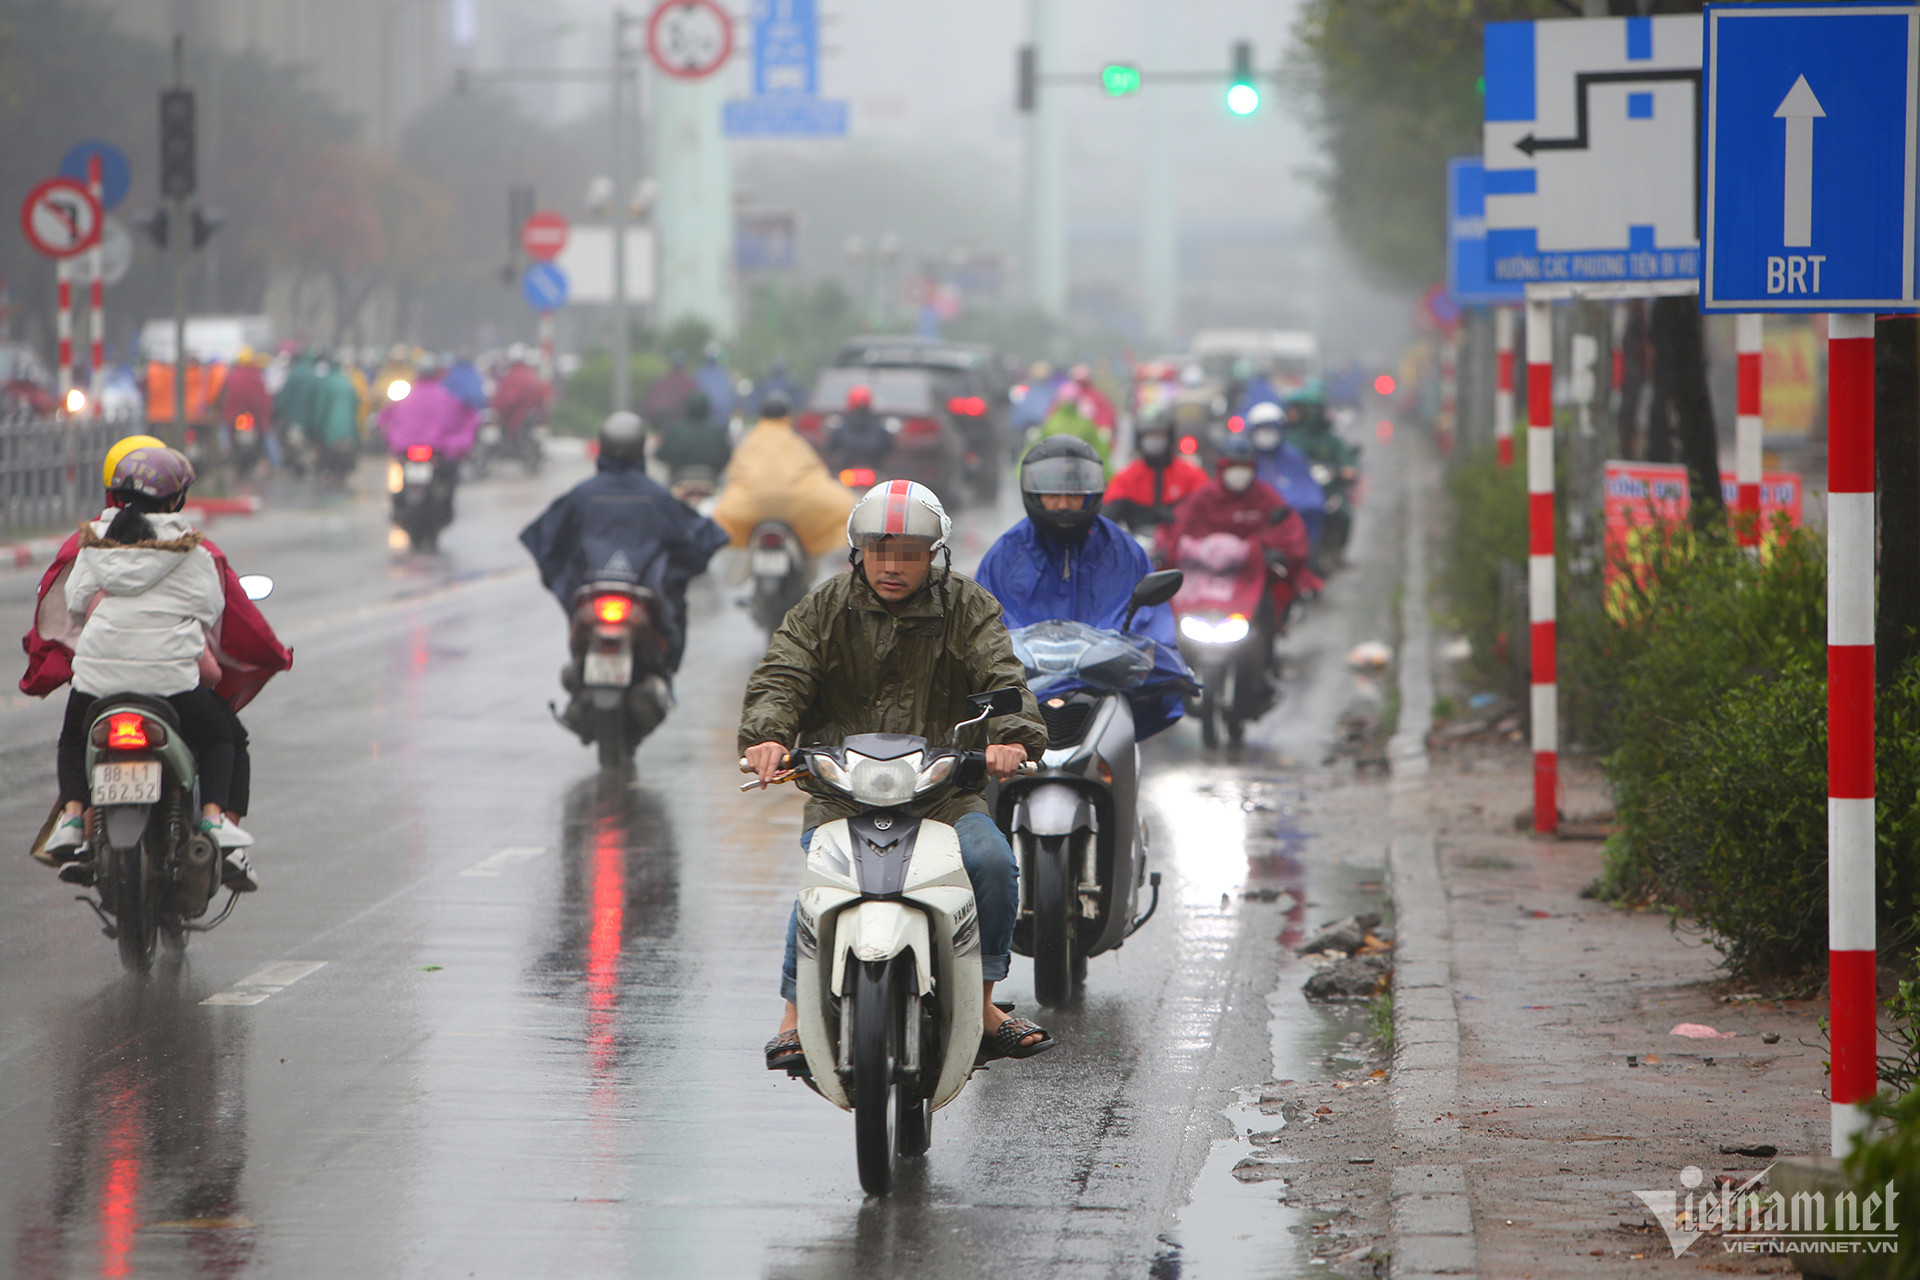 View - Bất chấp trời mưa đường trơn, đoàn xe máy vẫn đi ngược chiều ở Hà Nội